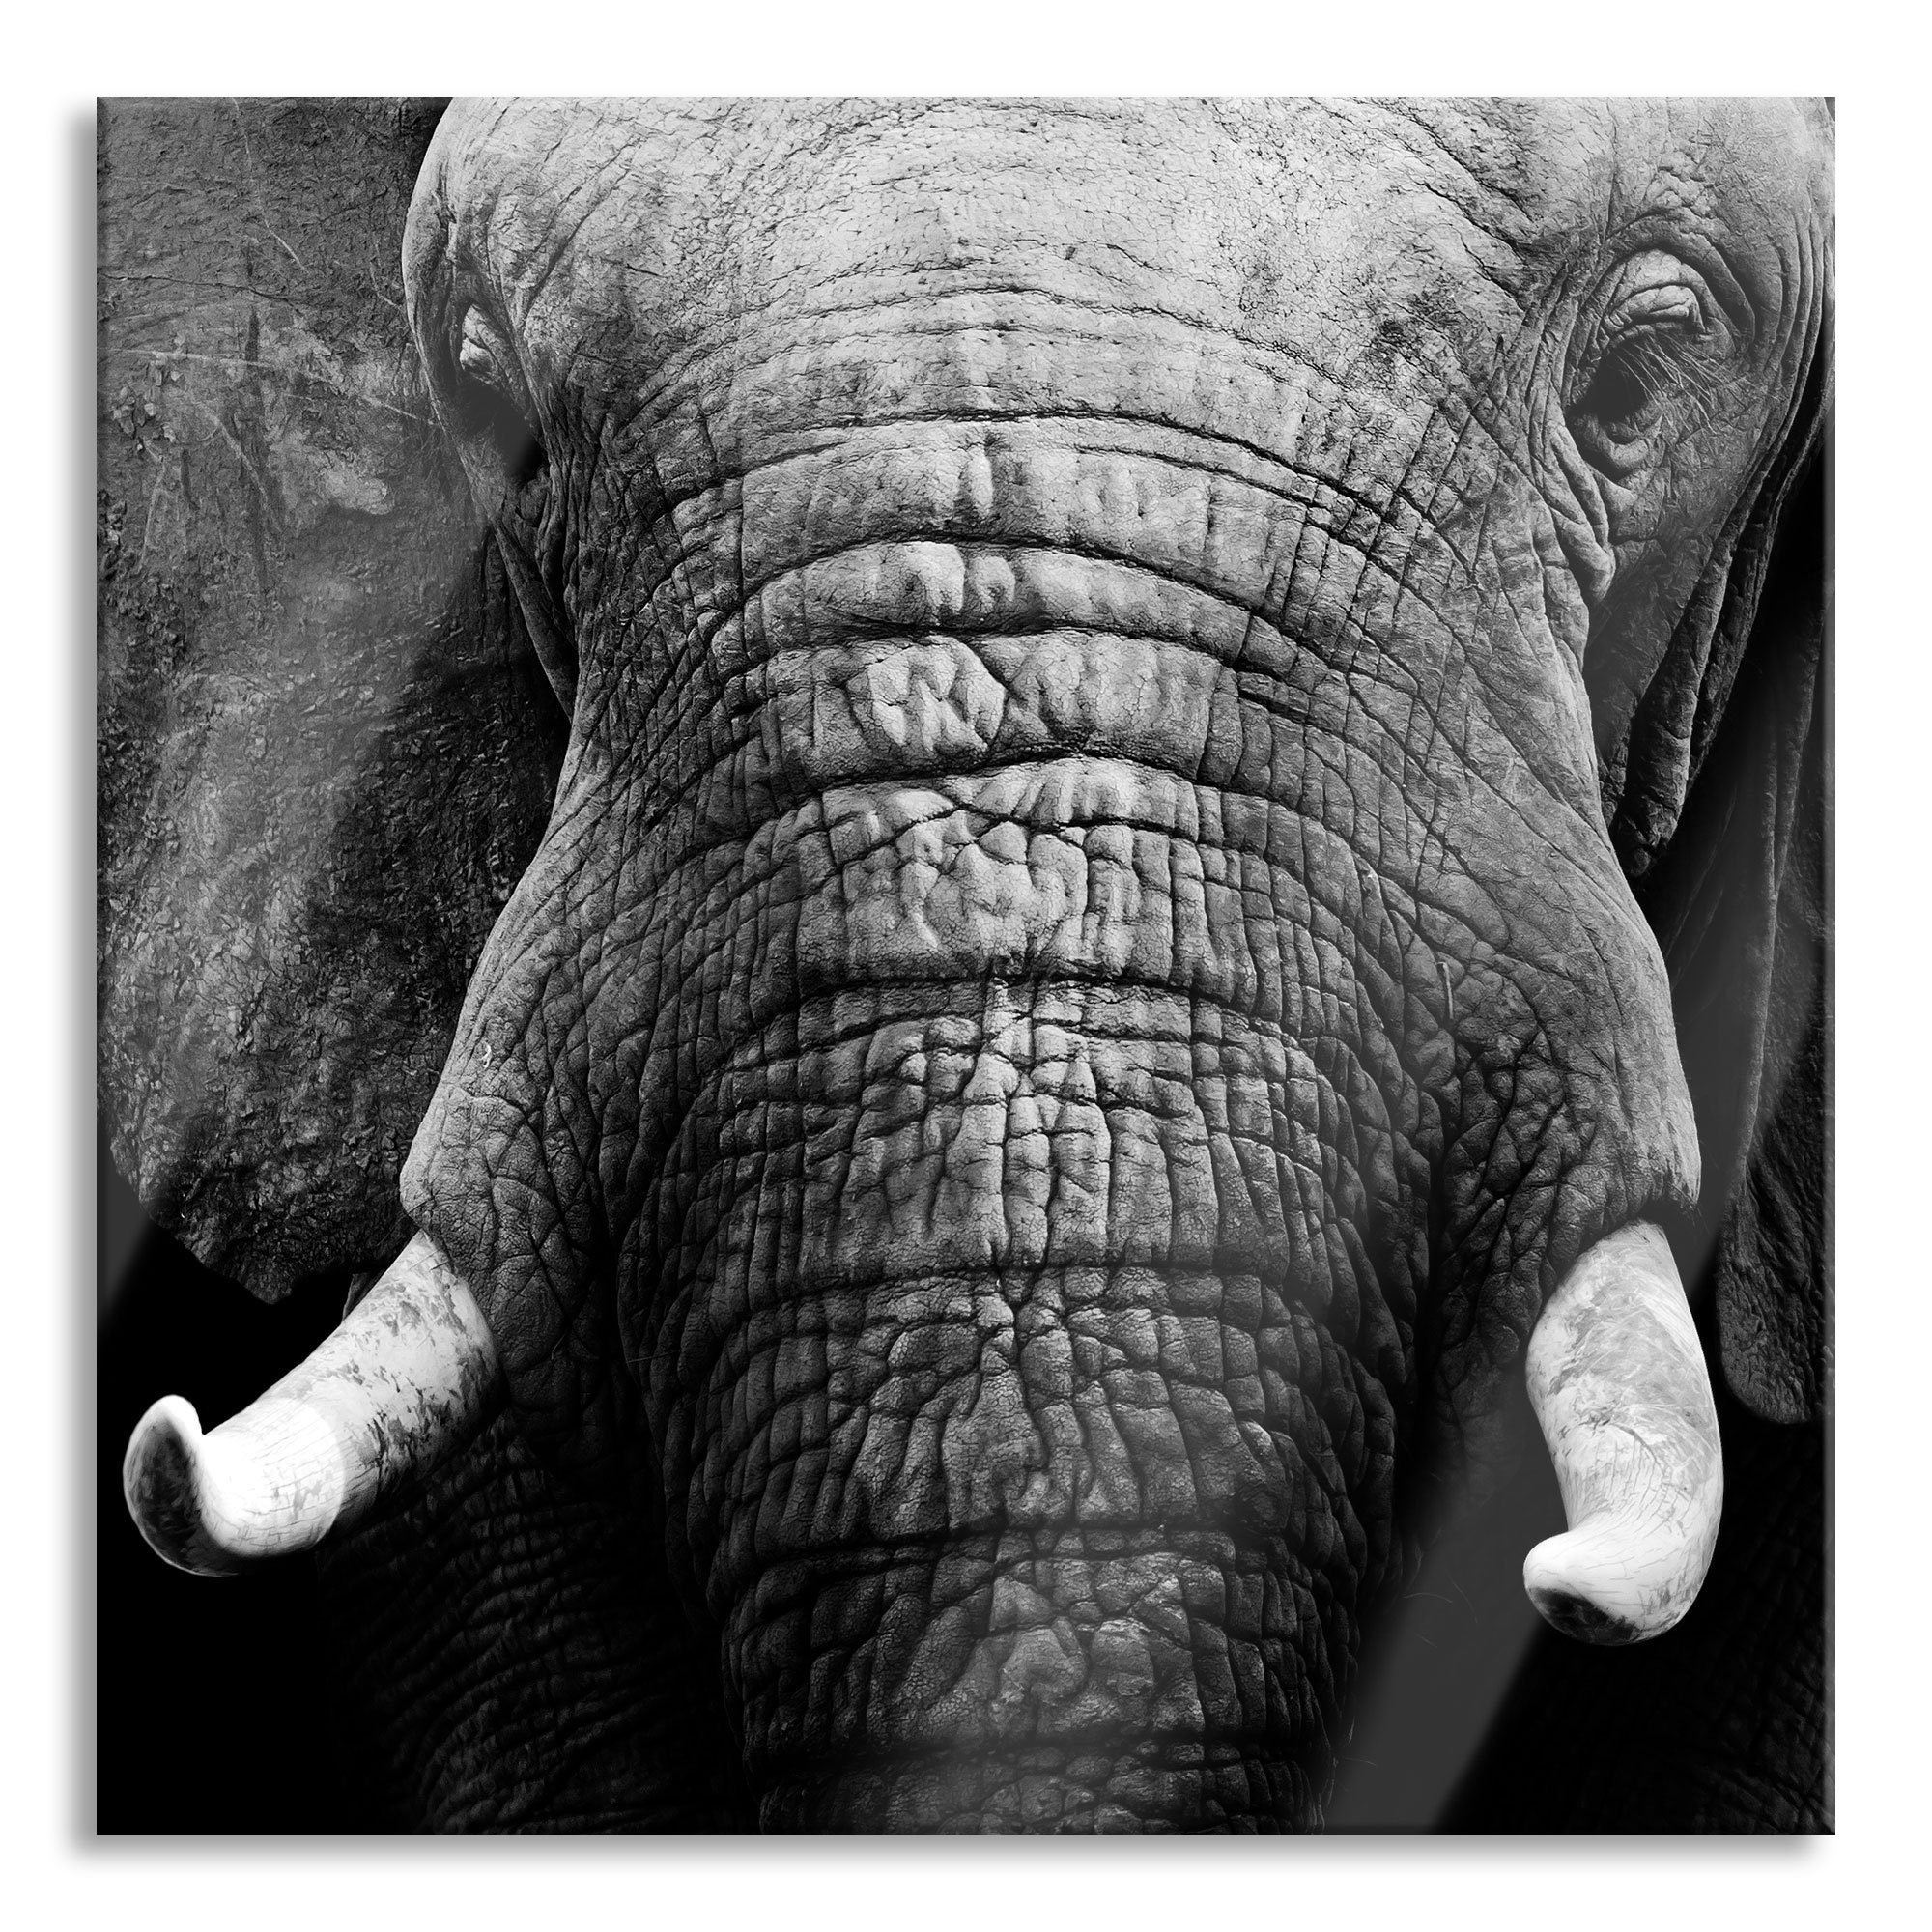 Pixxprint Glasbild Elefant Porträt, Elefant Porträt (1 St), Glasbild aus Echtglas, inkl. Aufhängungen und Abstandshalter